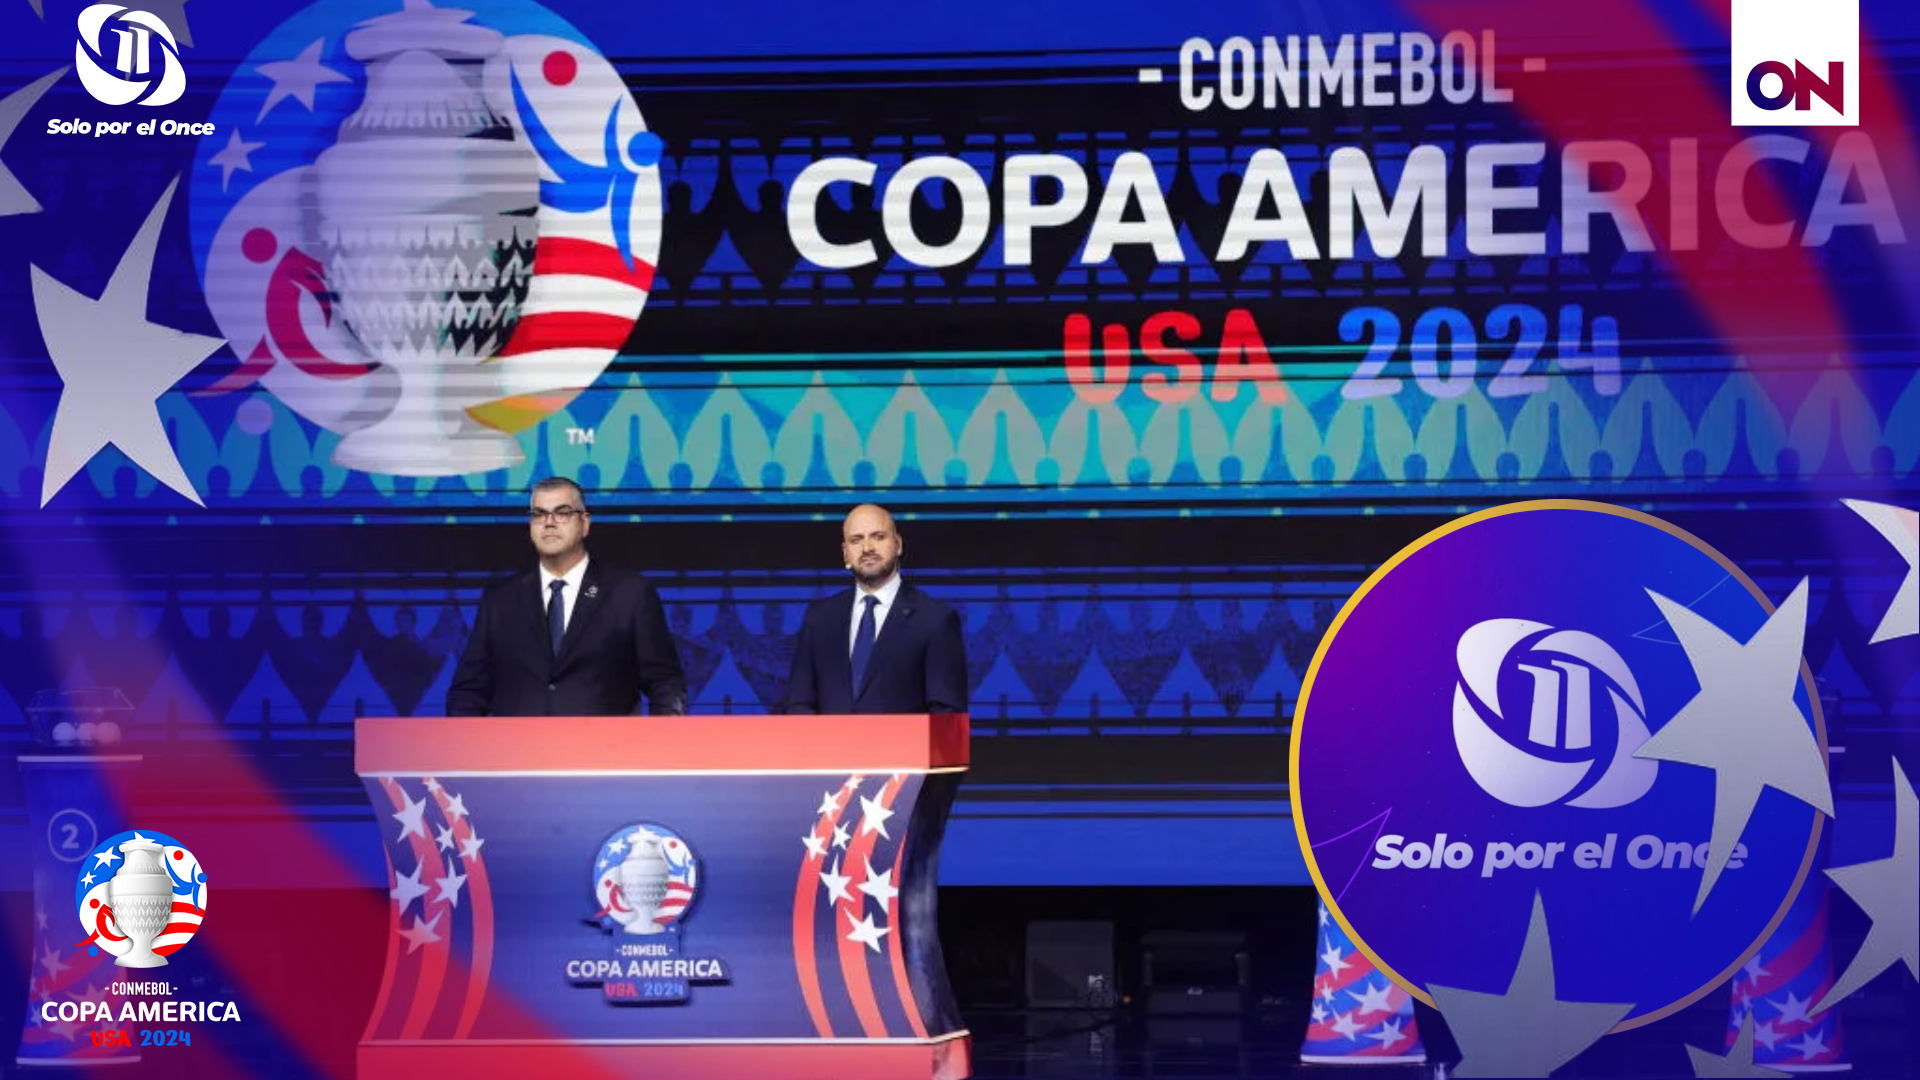 La Copa América es el torneo de fútbol más antiguo del mundo deportivo y se trata de uno de los eventos mas importante de sudamérica.